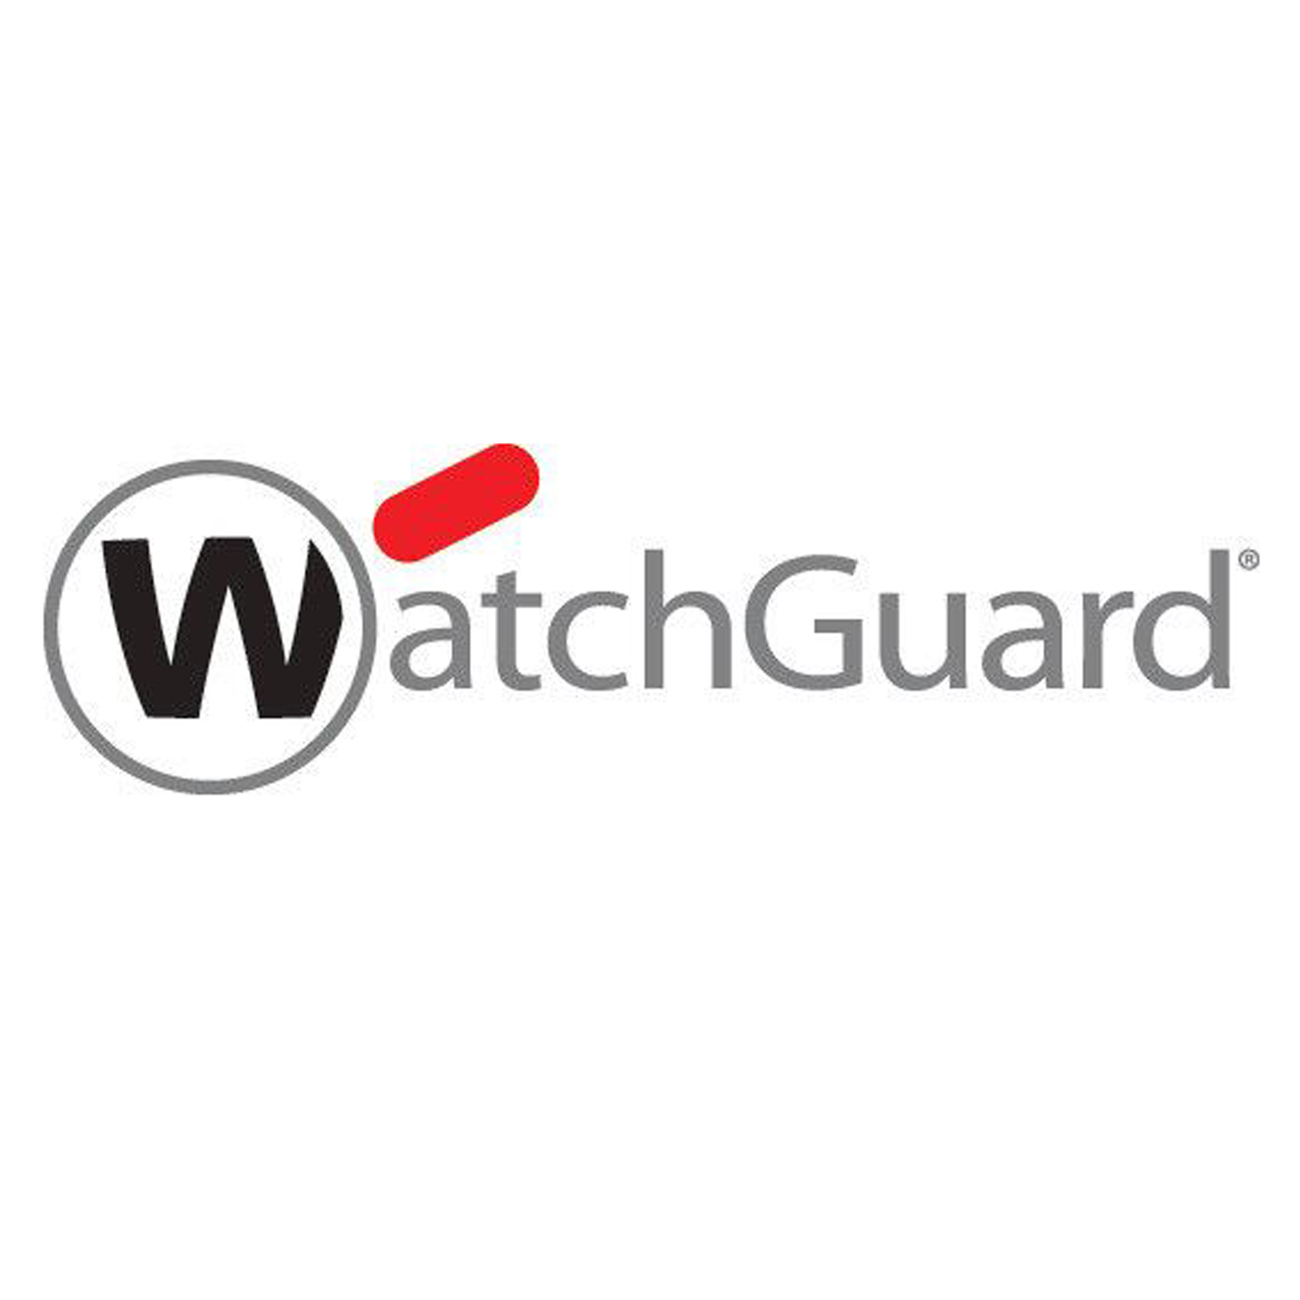 Watchguard WGCLG003, Software Lizenzen, WatchGuard Cloud WGCLG003 (BILD1)